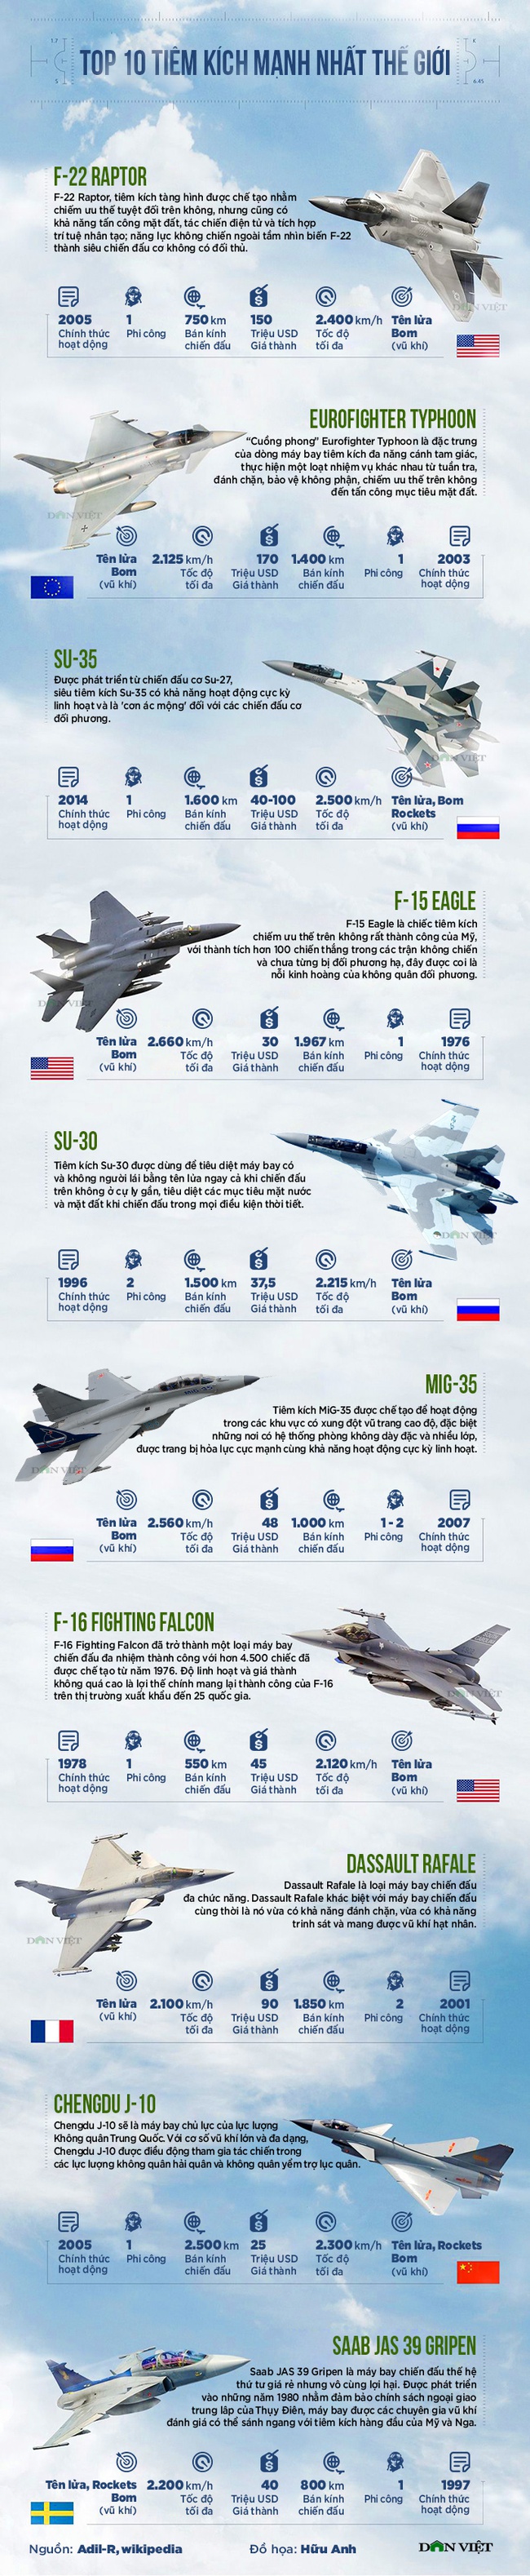 Top 10 tiêm kích chiến đấu mạnh nhất: Nga - Mỹ ngang tài - Ảnh 1.